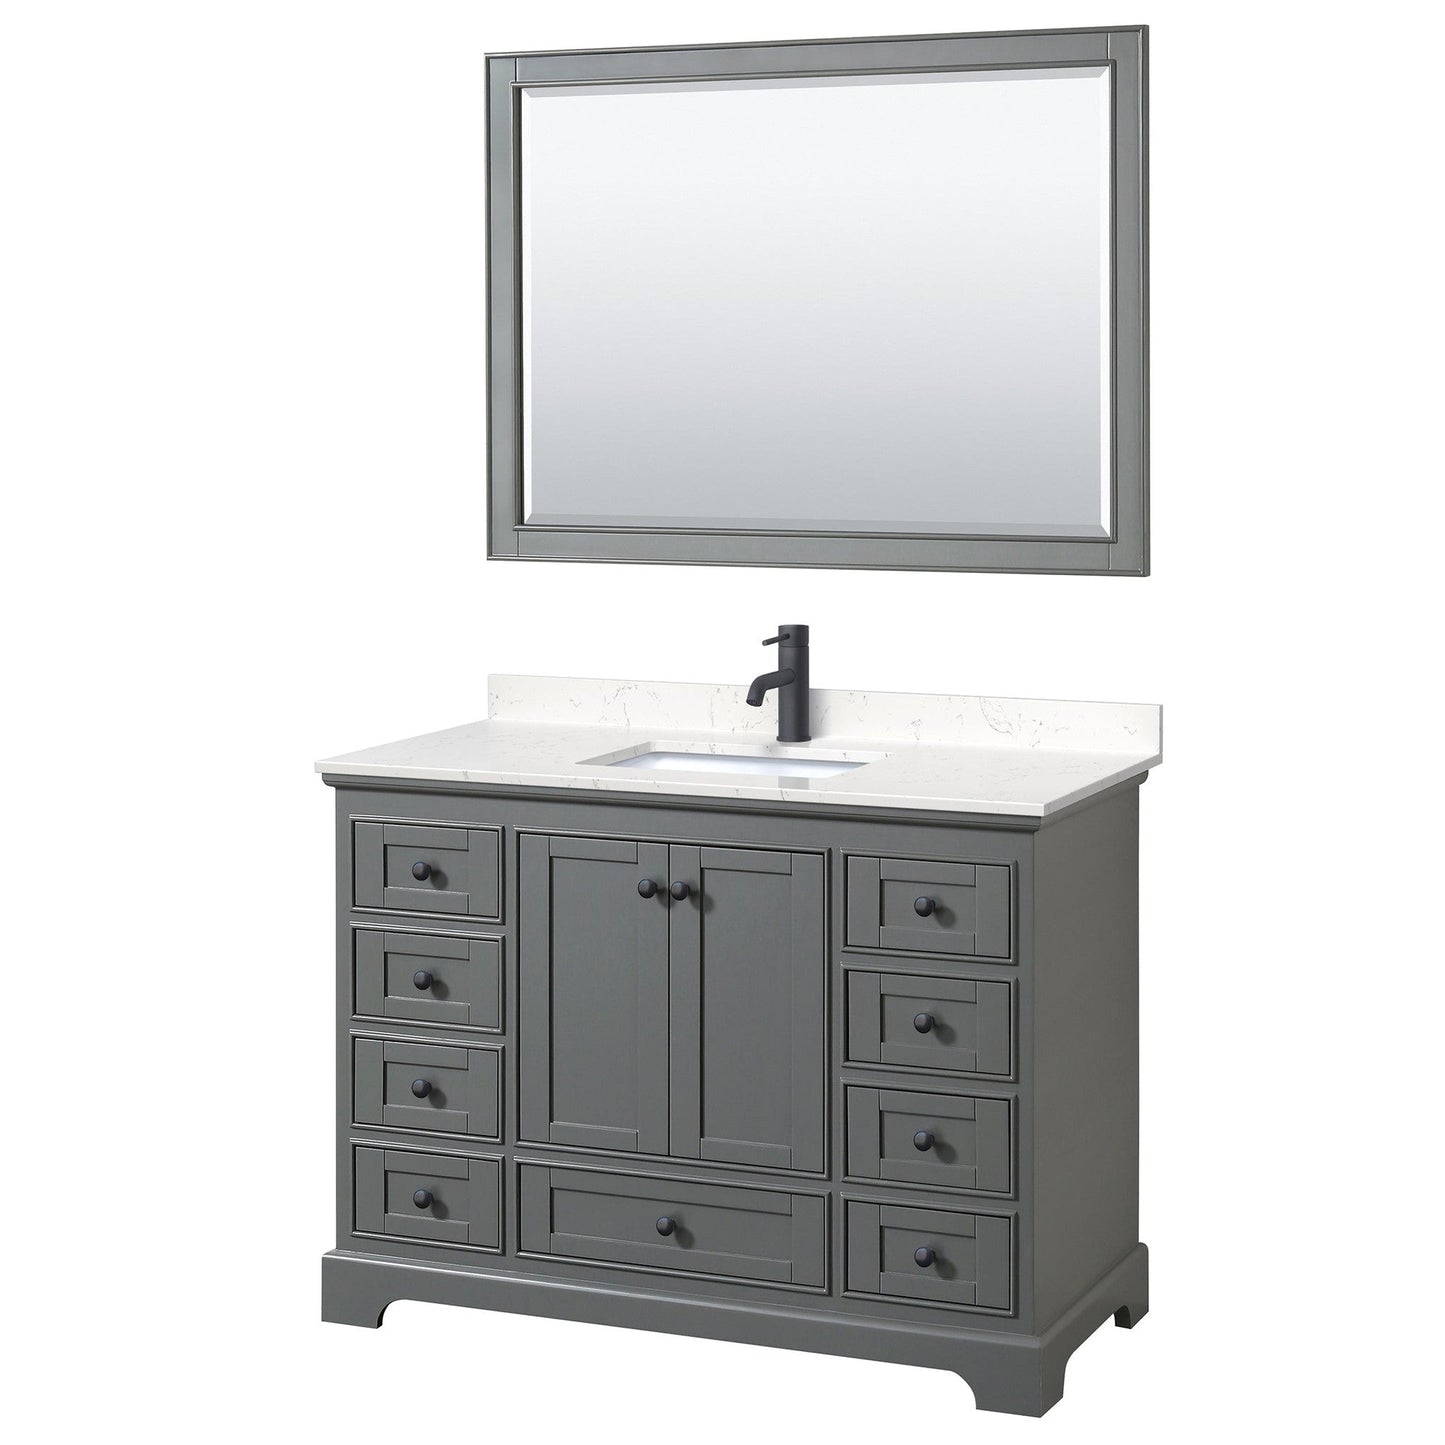 Deborah 48" Single Bathroom Vanity in Dark Gray, Carrara Cultured Marble Countertop, Undermount Square Sink, Matte Black Trim, 46" Mirror